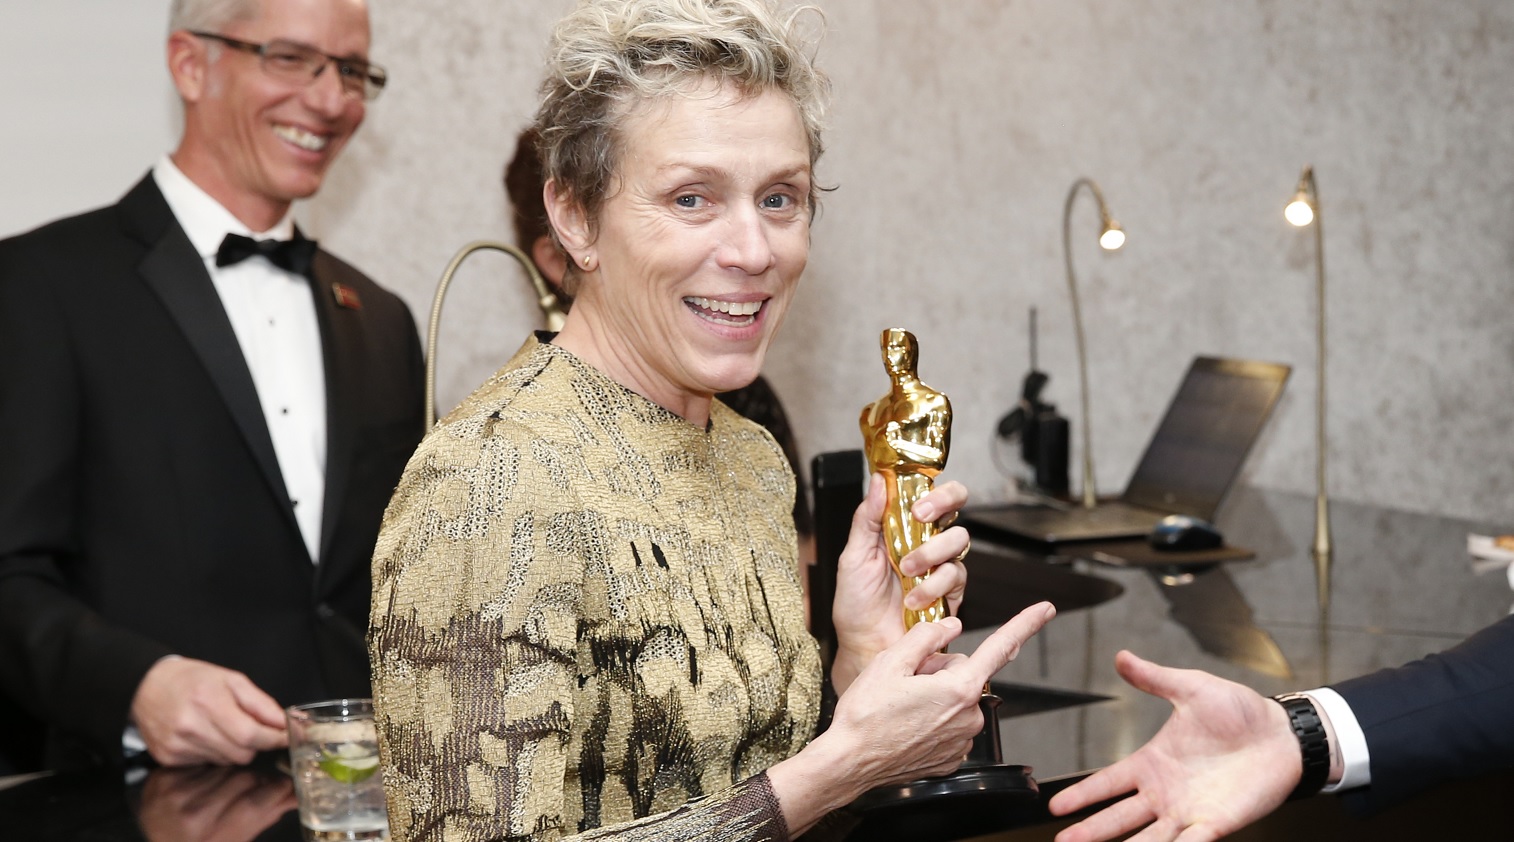 Cae hombre que robó estatuilla del Oscar a Frances McDormand en fiesta